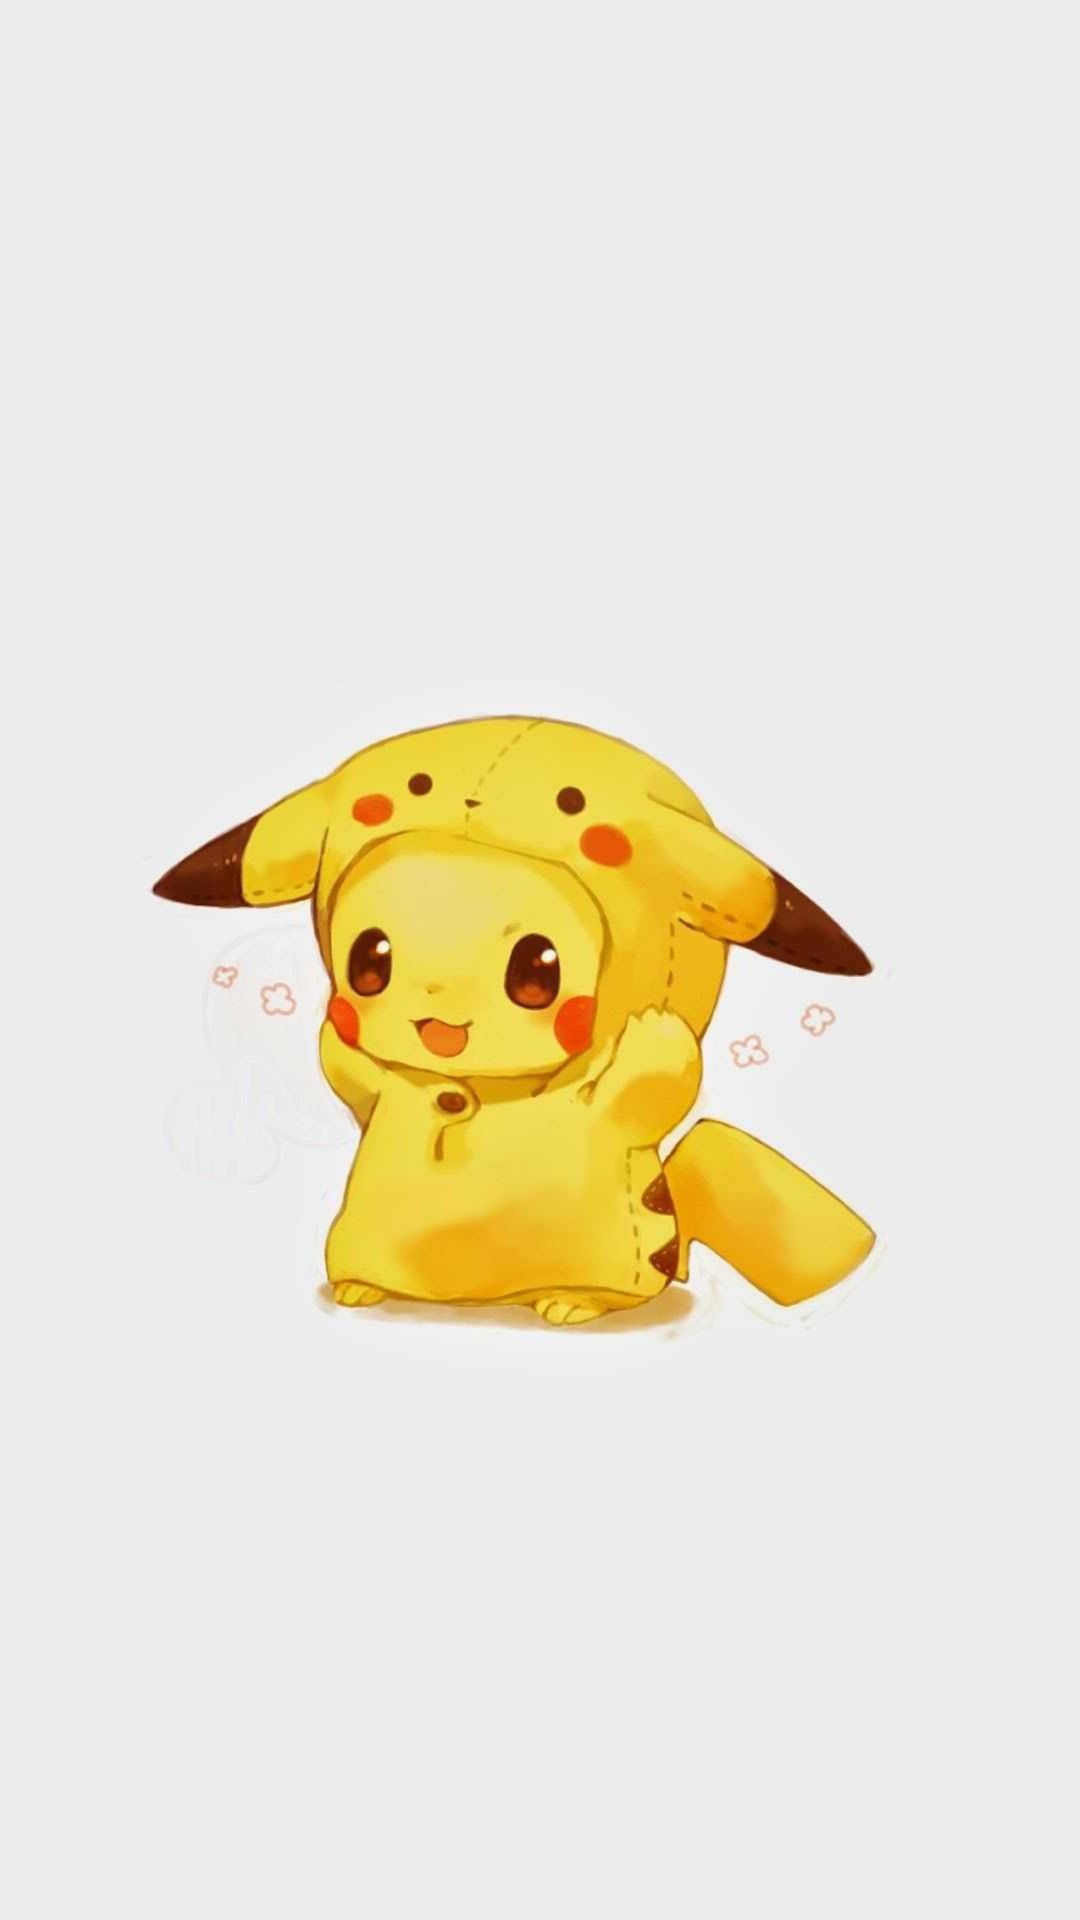 Little Pikachu Portrait Image